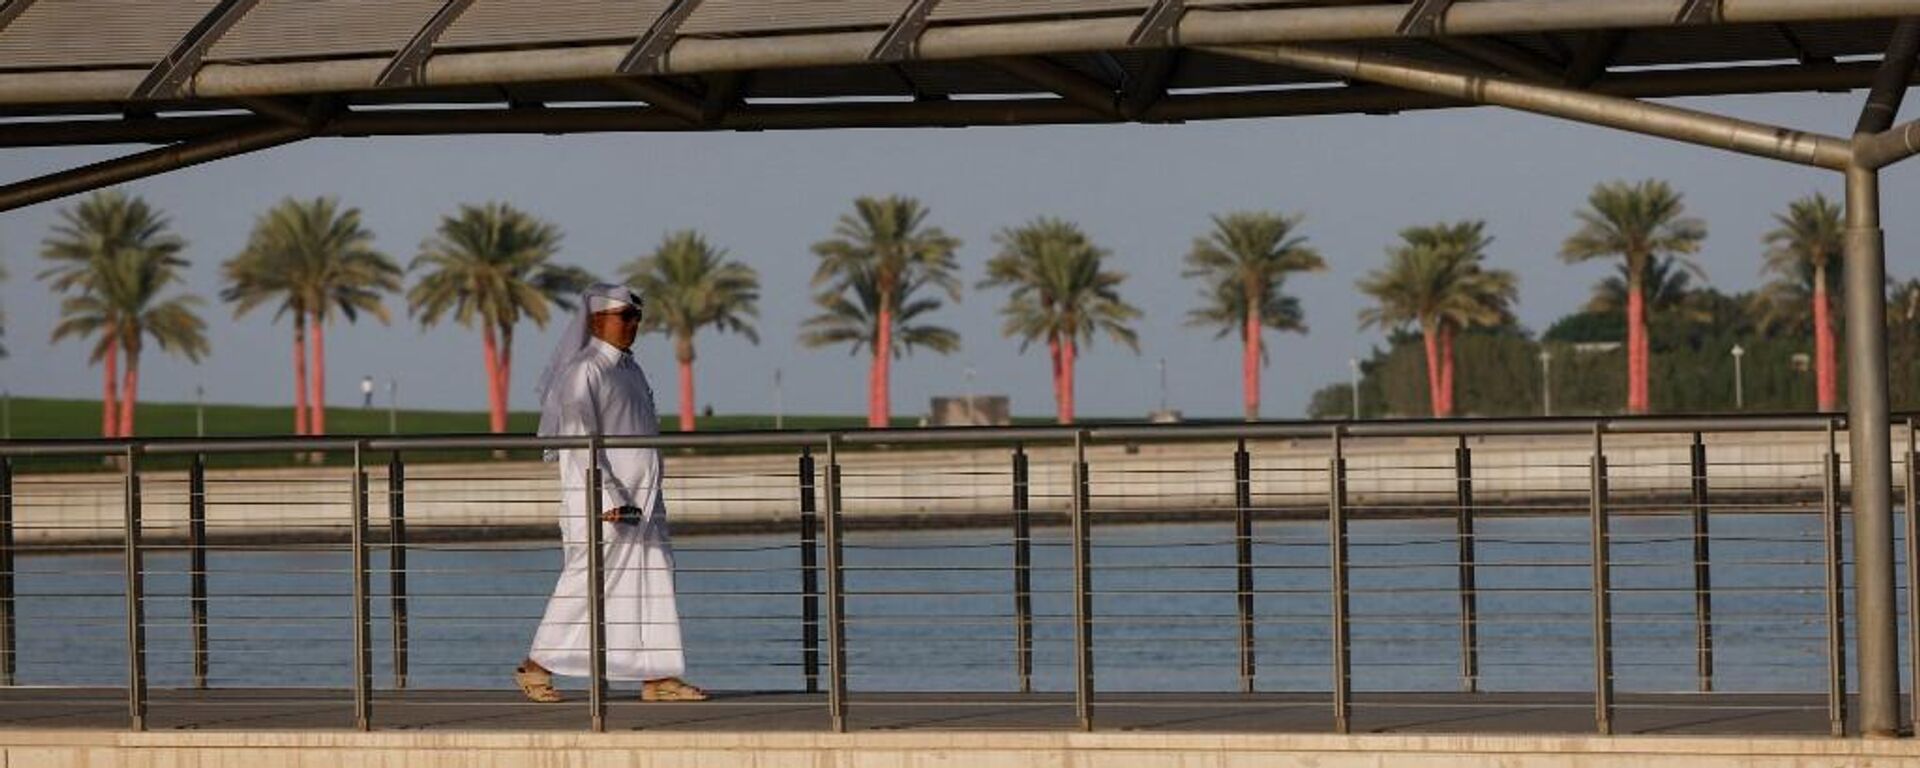 Un hombre camina sobre un puente después de visitar el Museo del Islam en Doha, Catar, en noviembre de 2022, previo a la Copa del Mundo.  - Sputnik Mundo, 1920, 17.11.2022